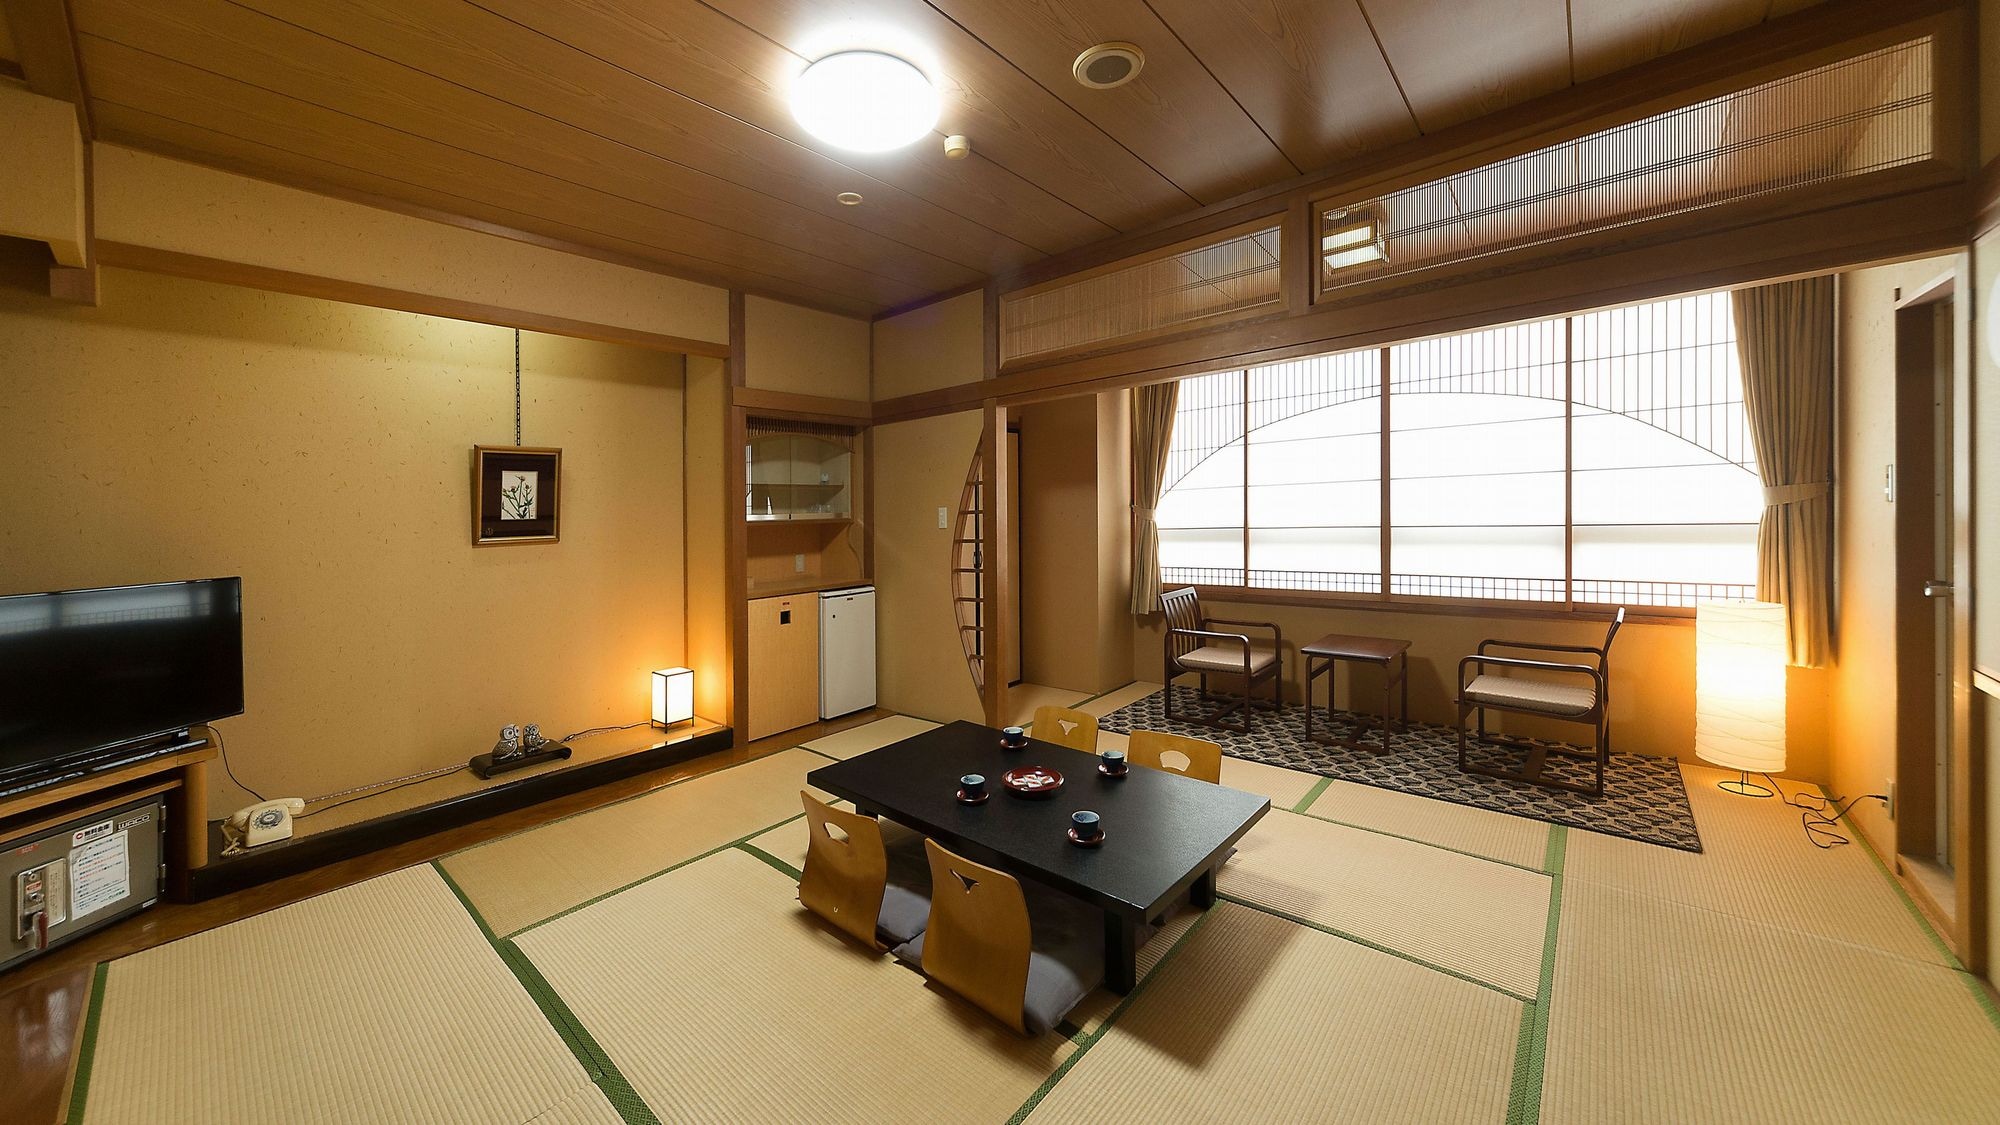 【일본식 방】 인원수에 맞는 넓이의 방을 준비하고 있습니다.